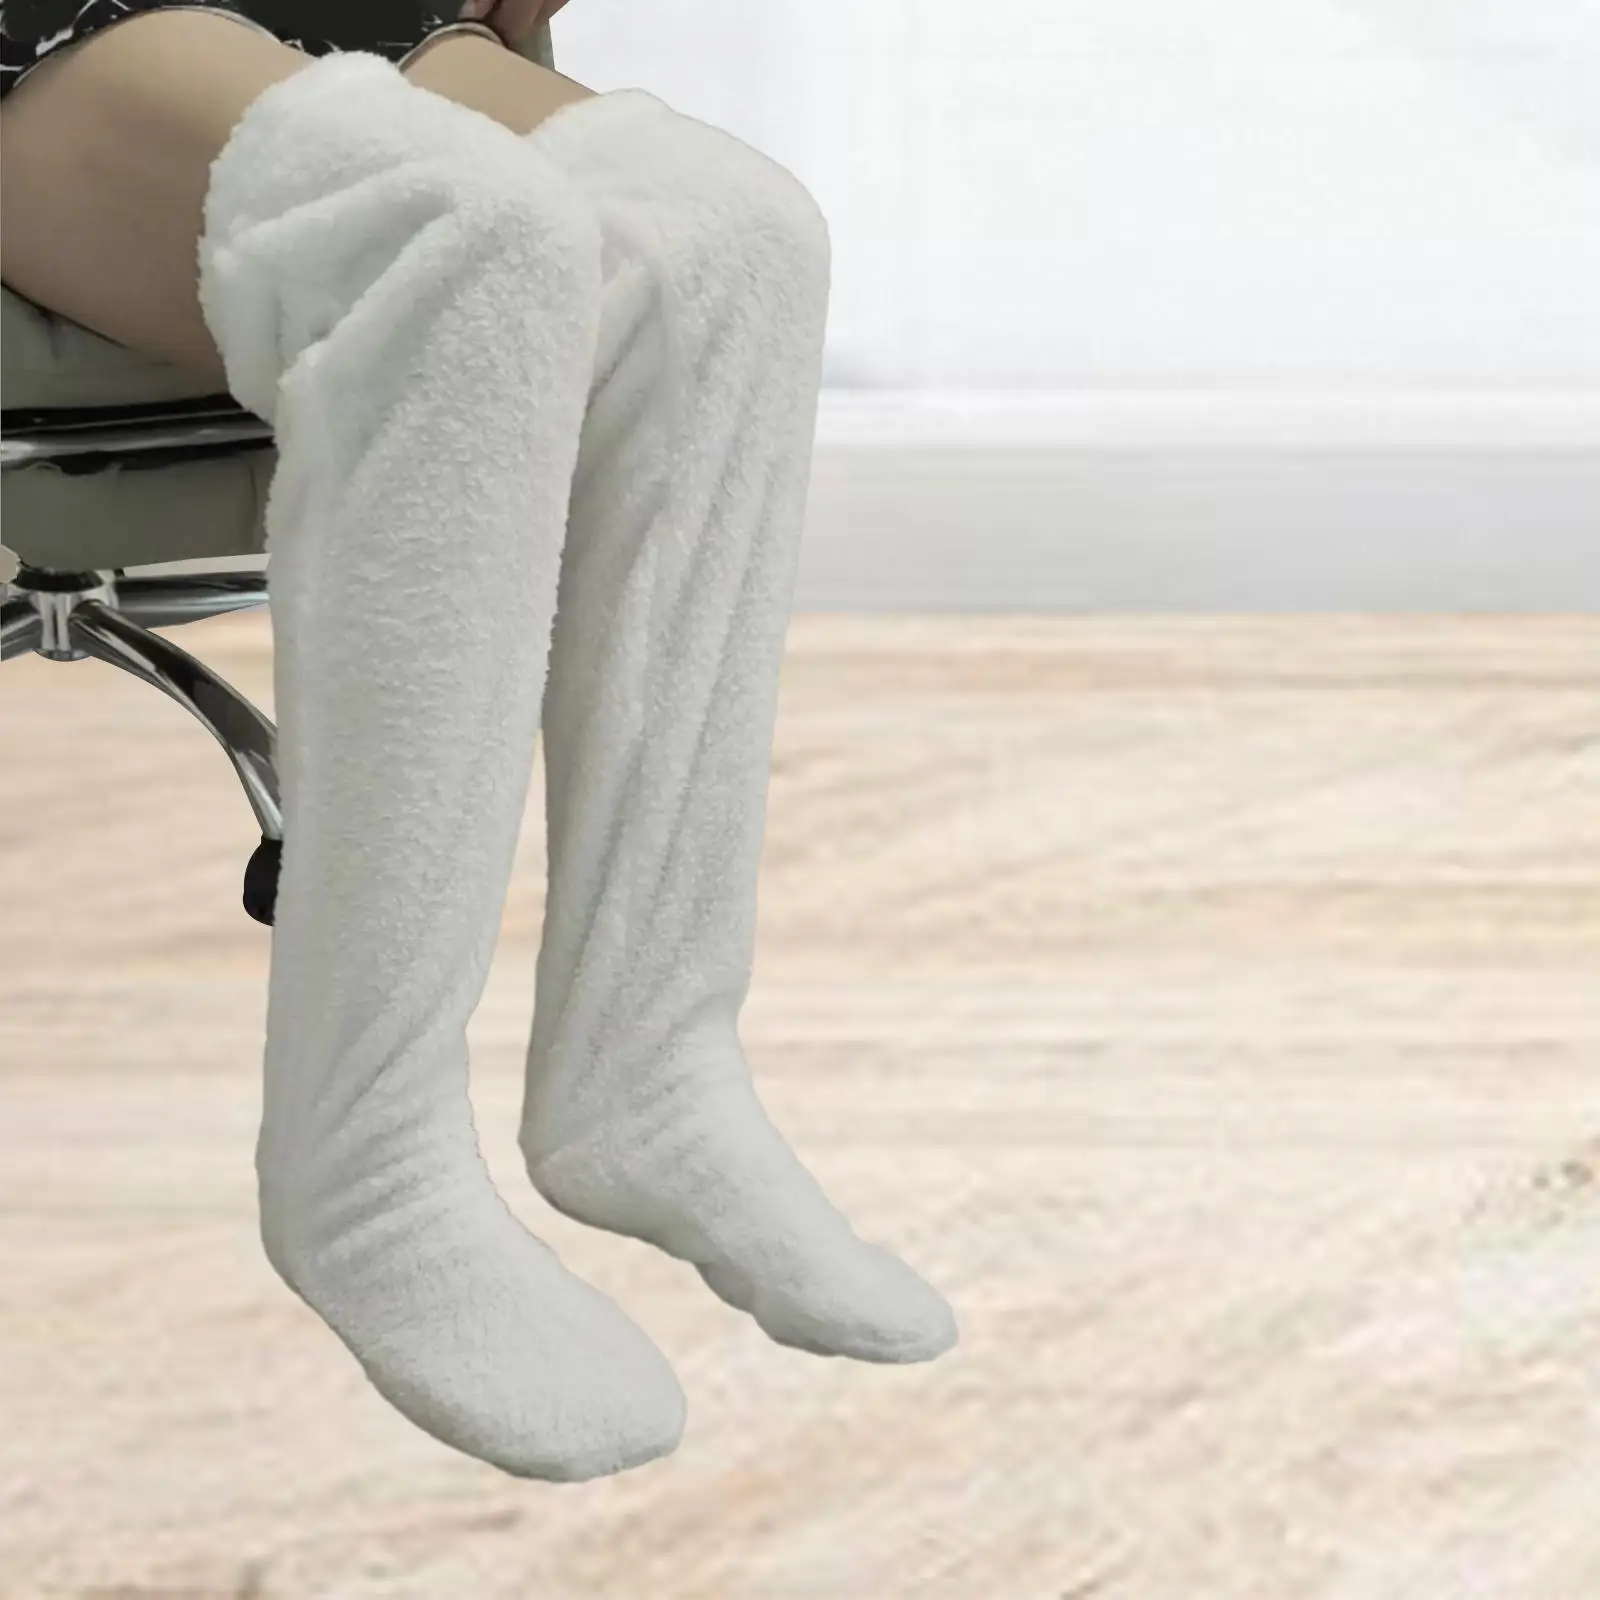 Thigh High Socks Fleece Protector Knee Long Boot Stockings Plush Leg Warmers over Knee High Socks for Women Men Living Room Dorm